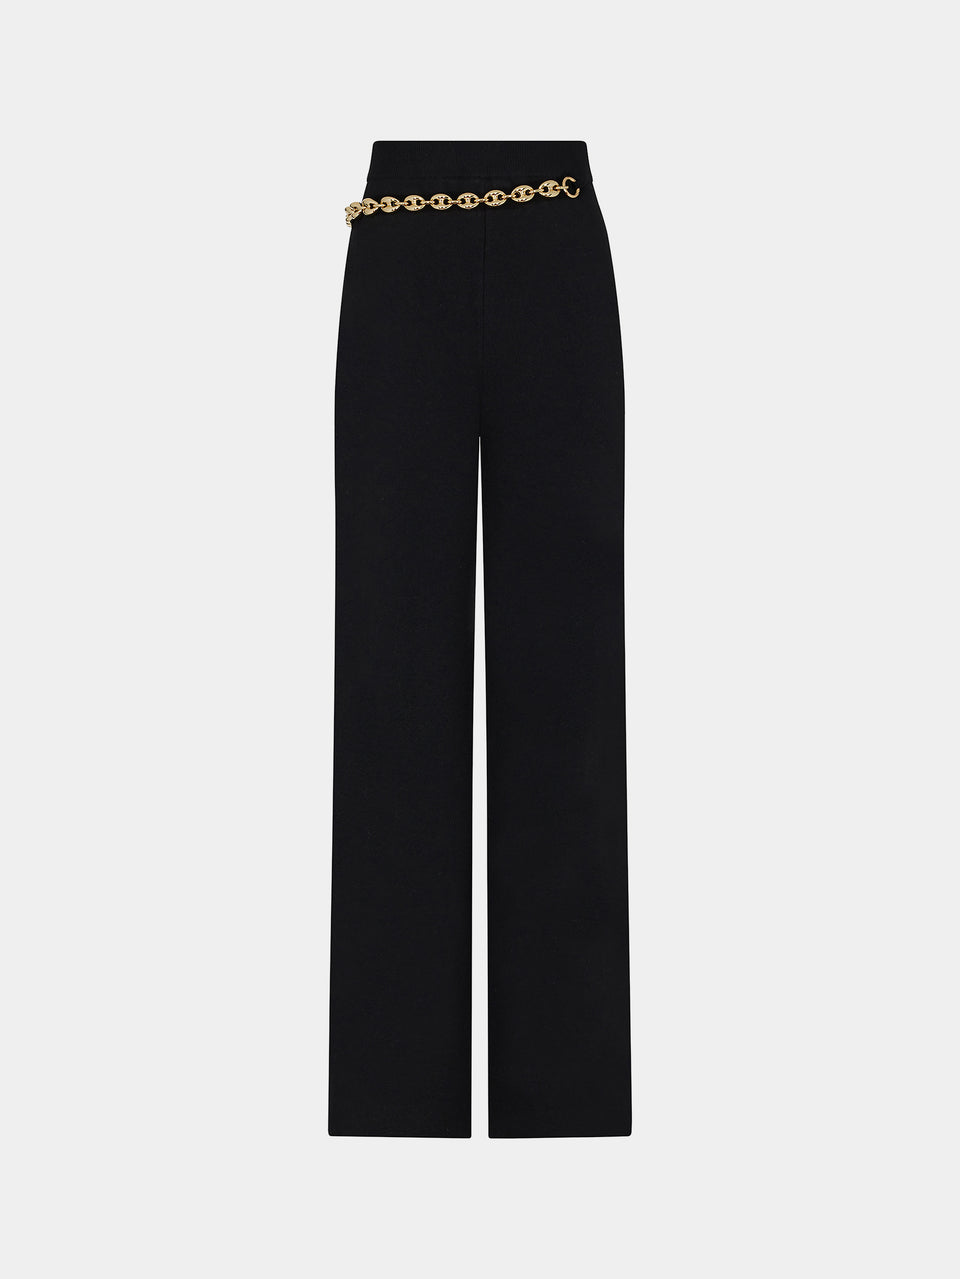 Pantalon noir avec chaîne en maillons dorés